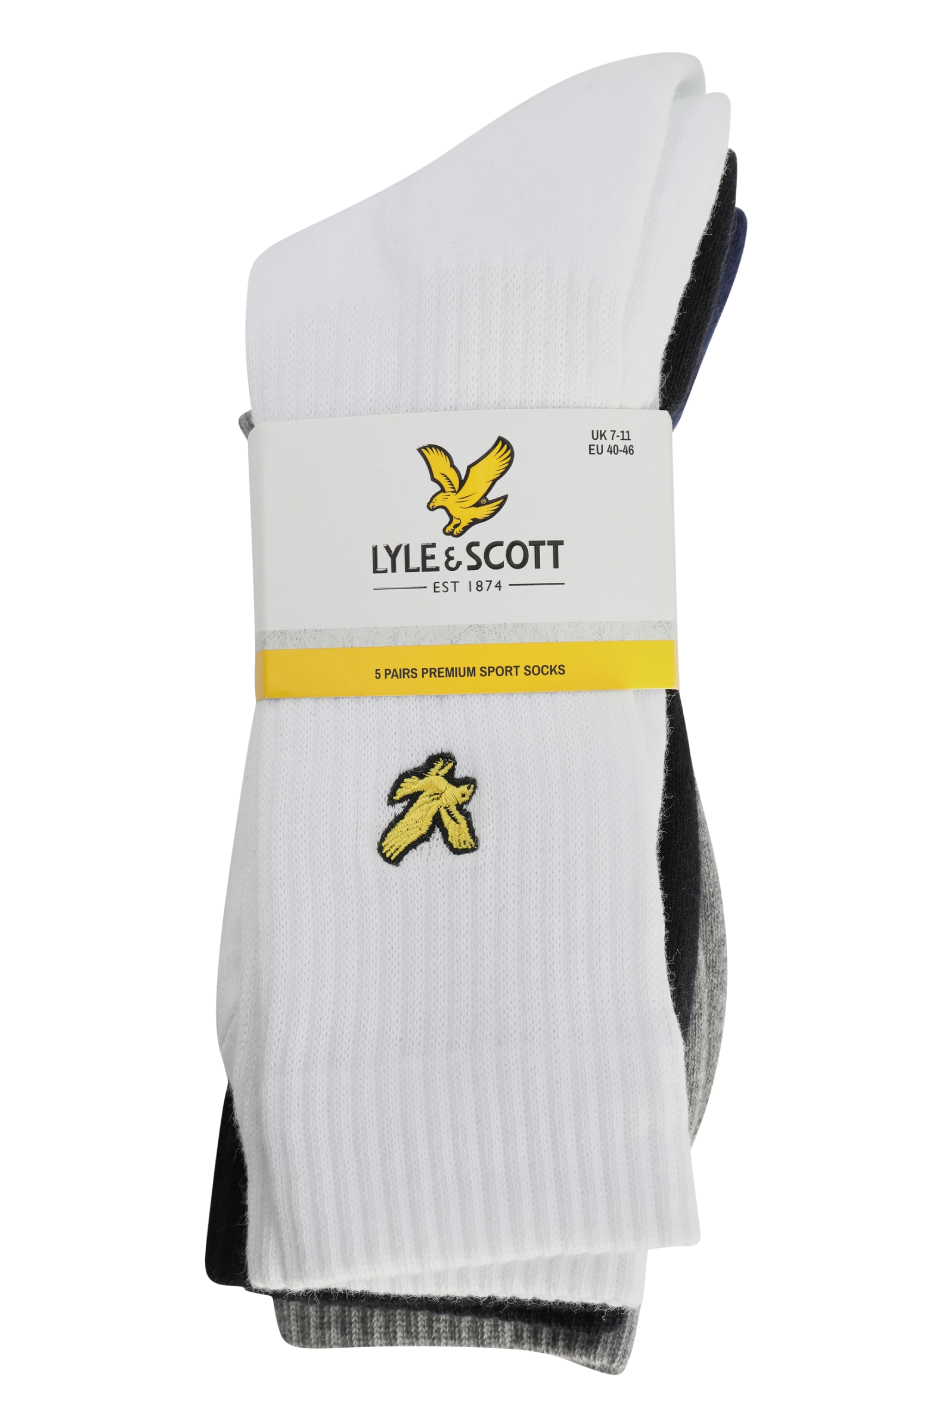 Lyle & Scott Camdyn 5 Pack Men's Sport Socks